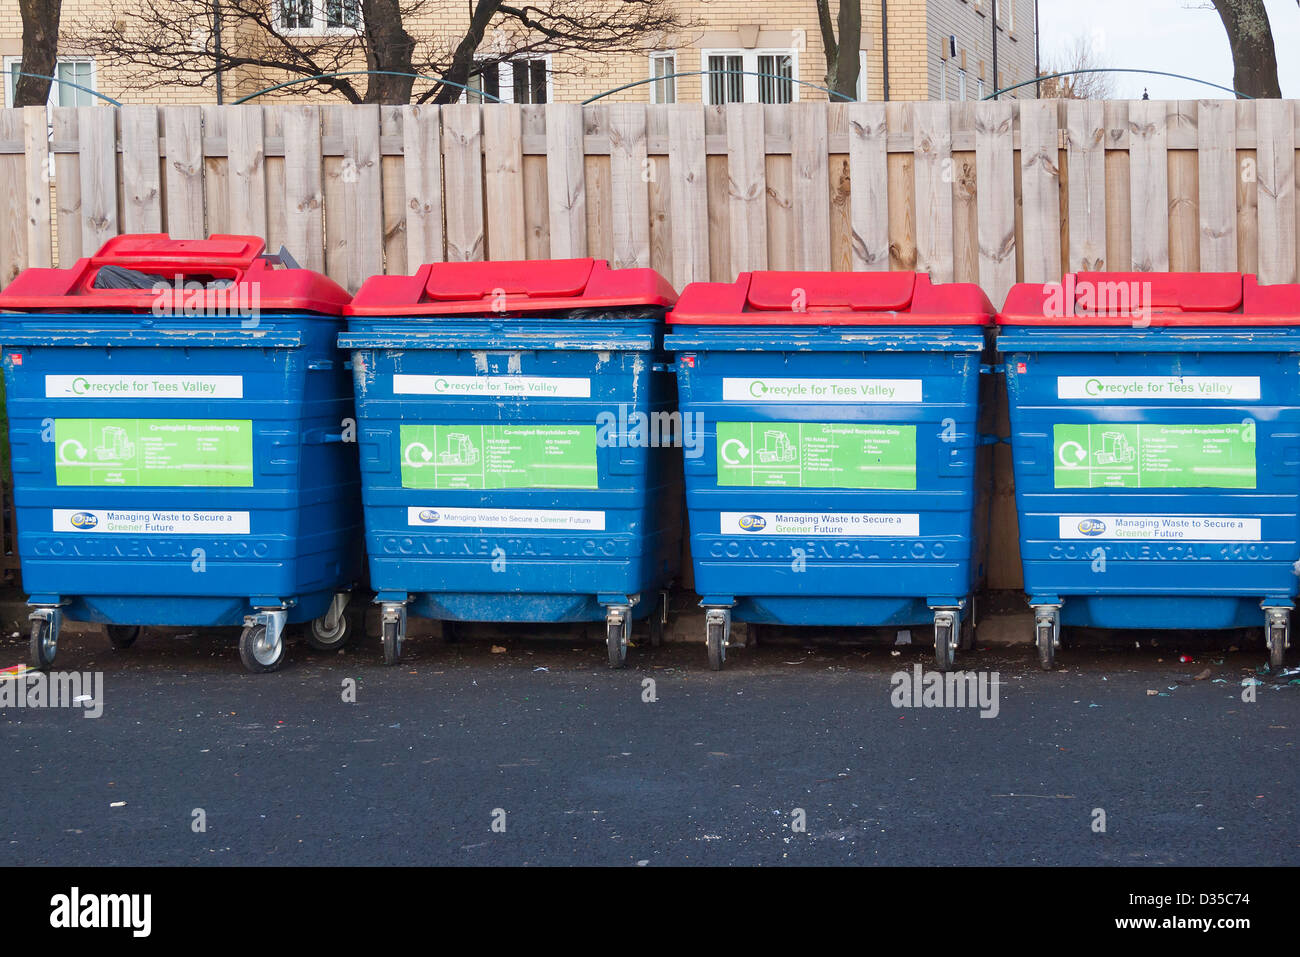 Quattro identici contenitori di riciclaggio per co-mescolato i rifiuti di carta e cartone di bottiglie in plastica Foto Stock